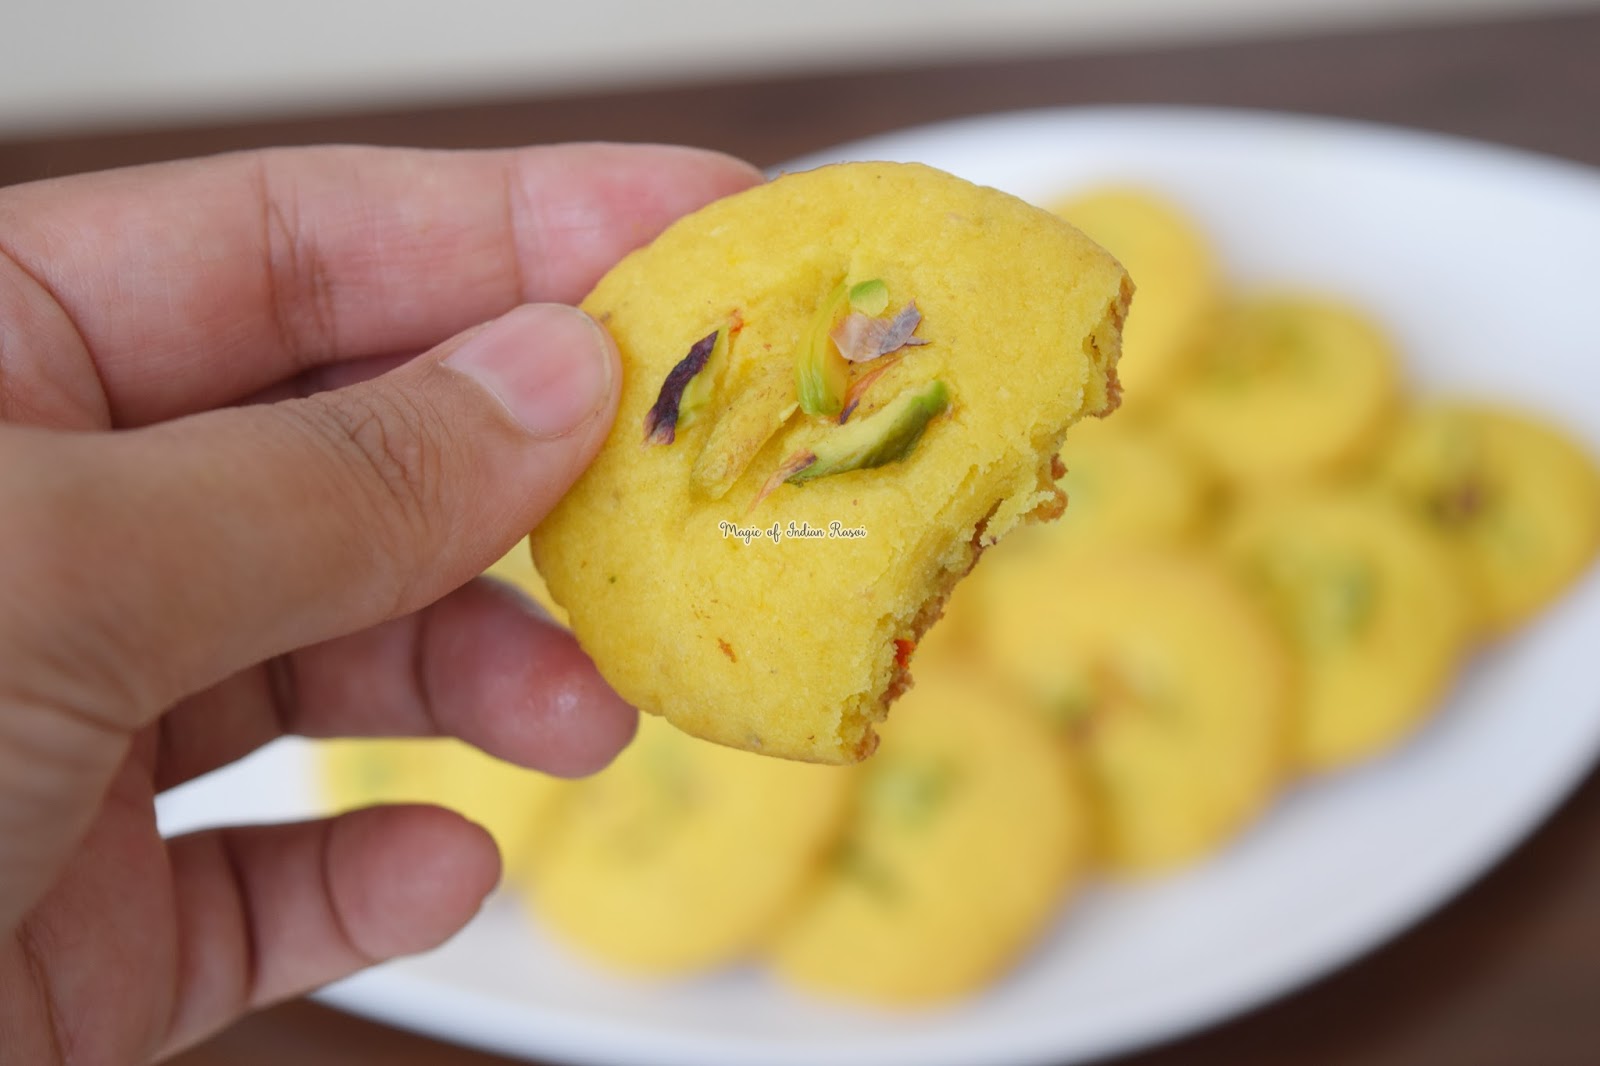 Kesar Pista Nankhatai in Kadai & in Oven Recipe - Bakery style Nan Khatai - Eggless Cookies -  केसर पिस्ता नानखटाई बिना ओवन - बेकरी स्टाइल नानकटाई - एगलेस कूकीज रेसिपी - Priya R - Magic of Indian Rasoi